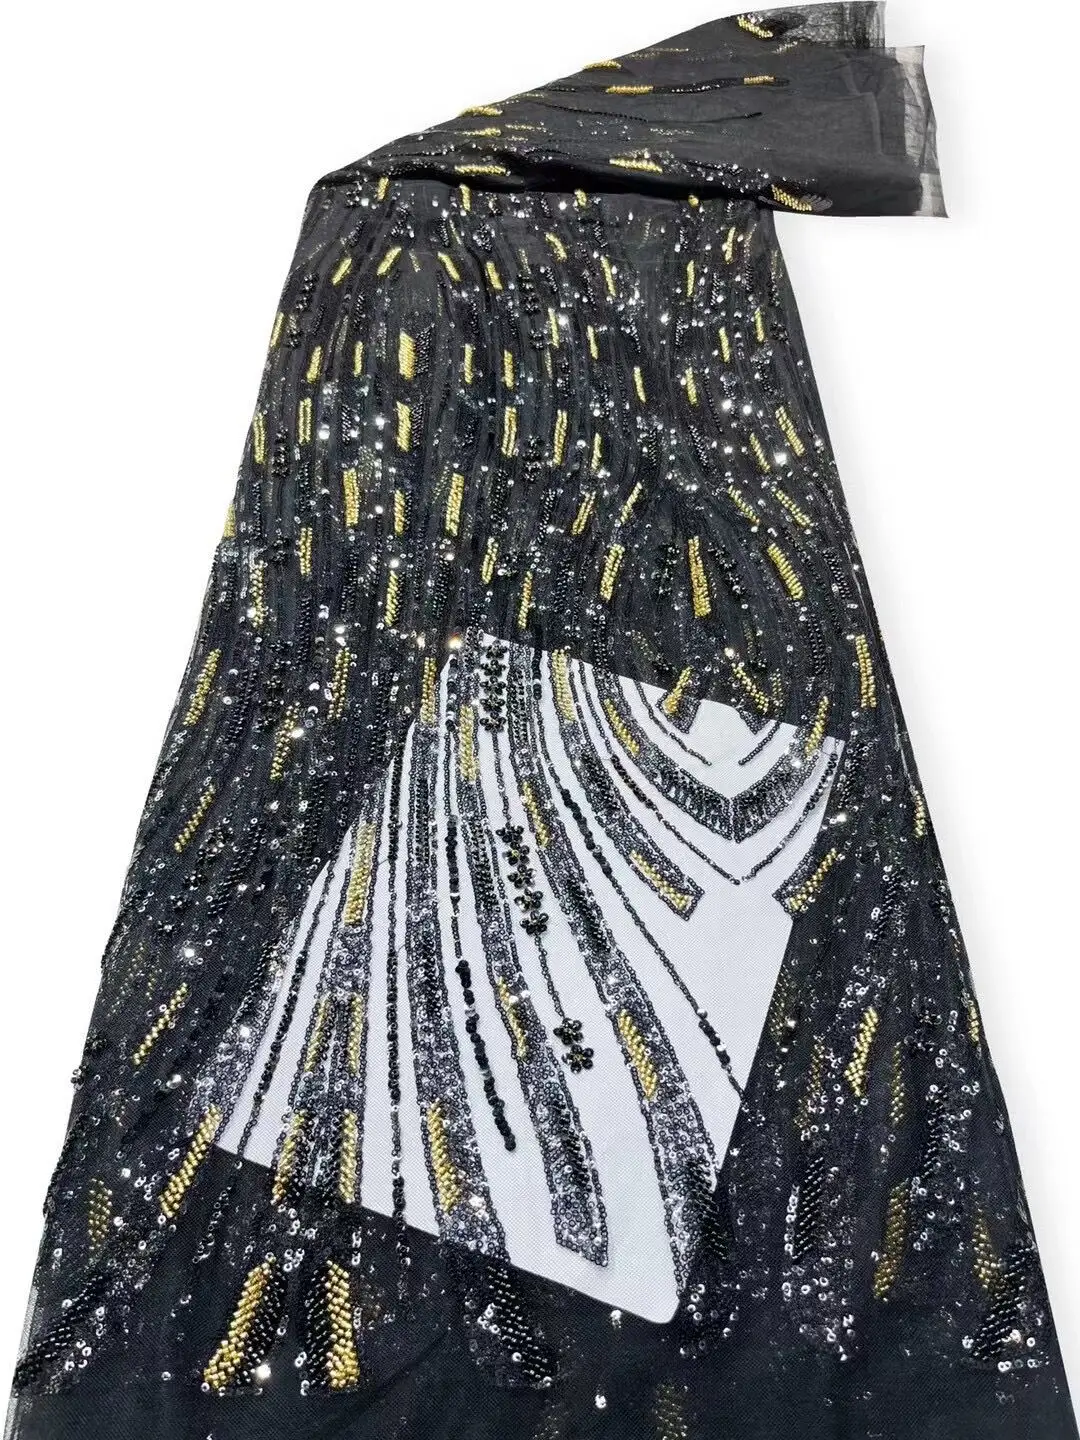  тюль кружевная ткань высокое качество африканская вышивка французский j-1302412 пайетки свадебное платье из бисера 0